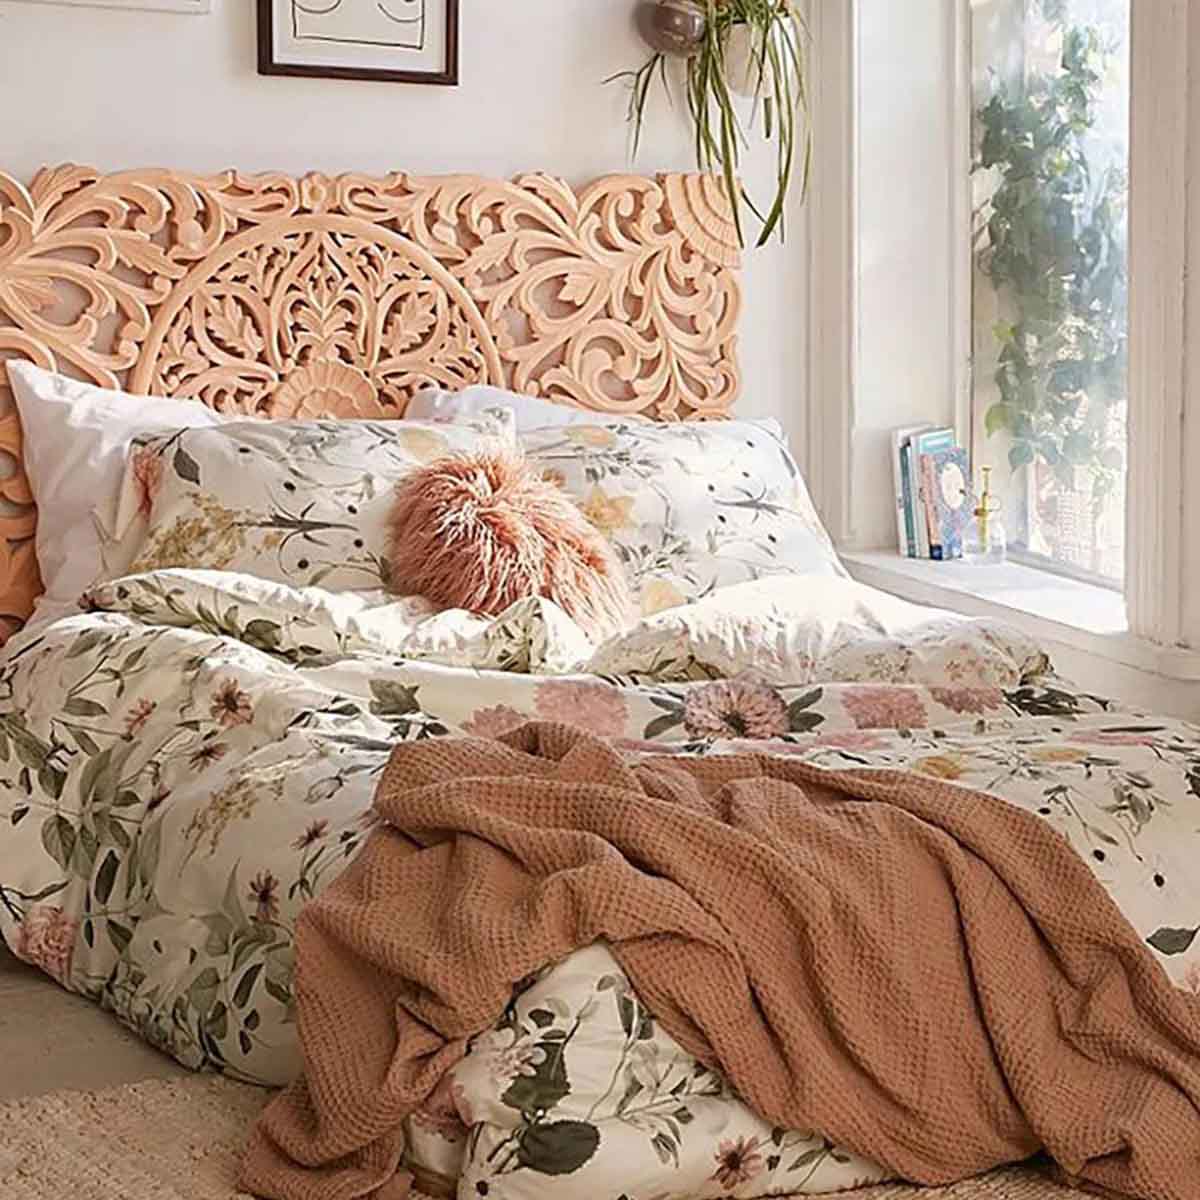 Phòng ngủ với họa tiết hoa tạo điểm nhấn.Nguồn: Aliz's Wonderland